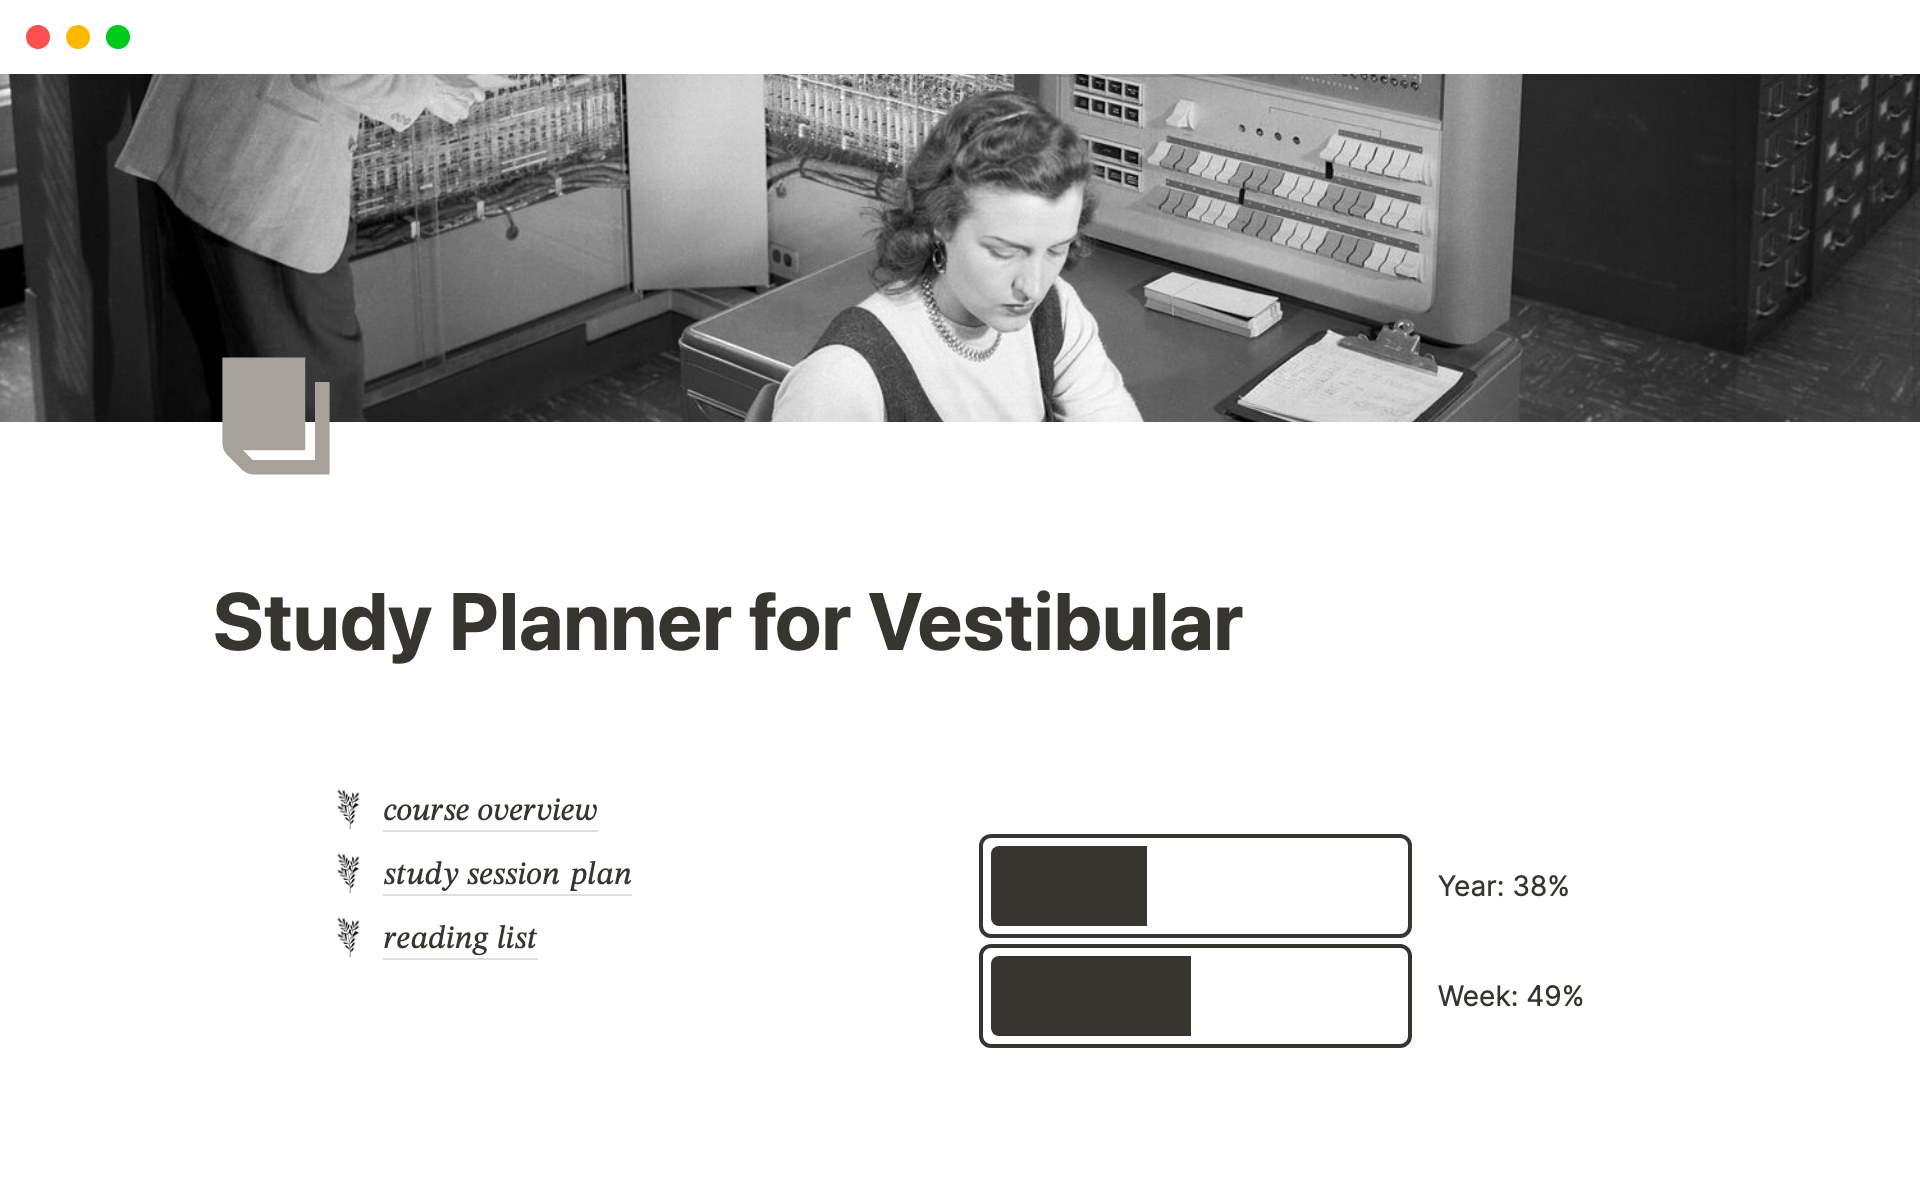 Uma prévia do modelo para Study Planner for Vestibular